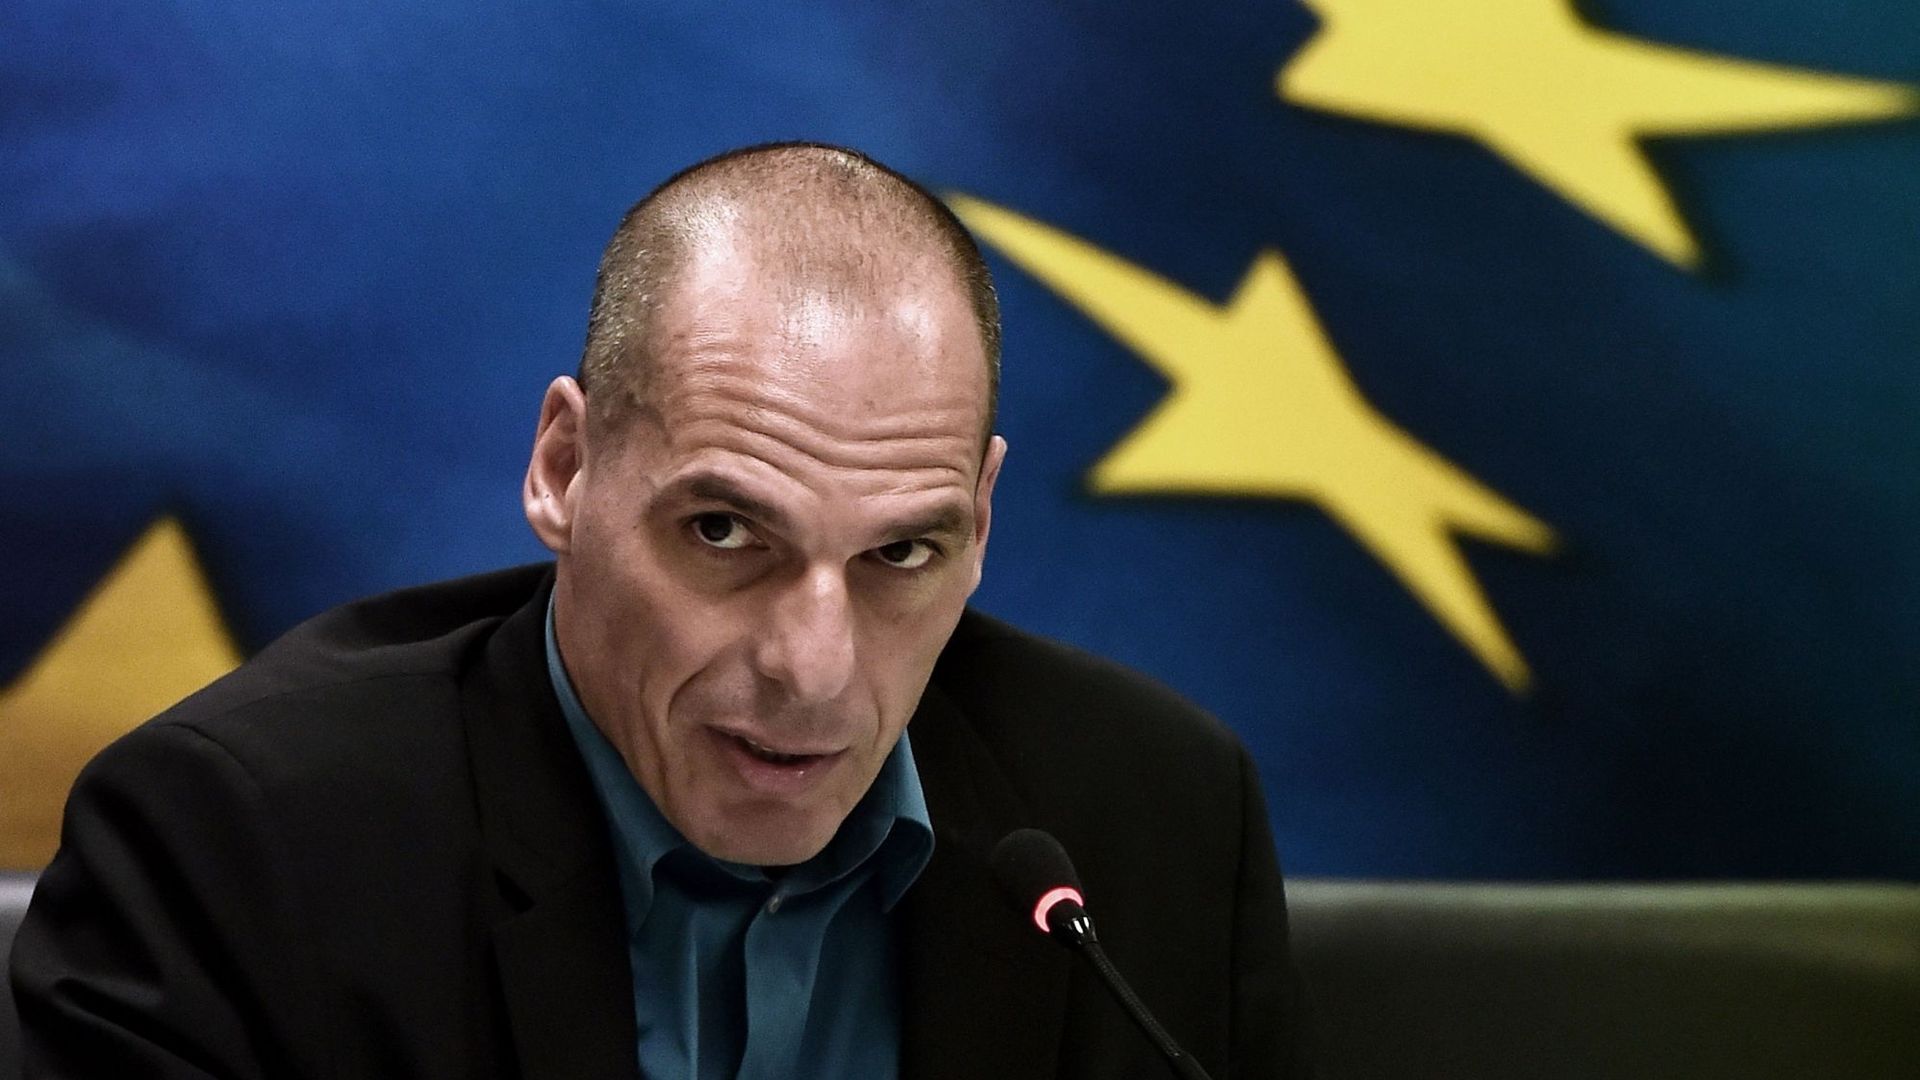 Le gouvernement grec ne veut plus discuter avec la troïka actuelle